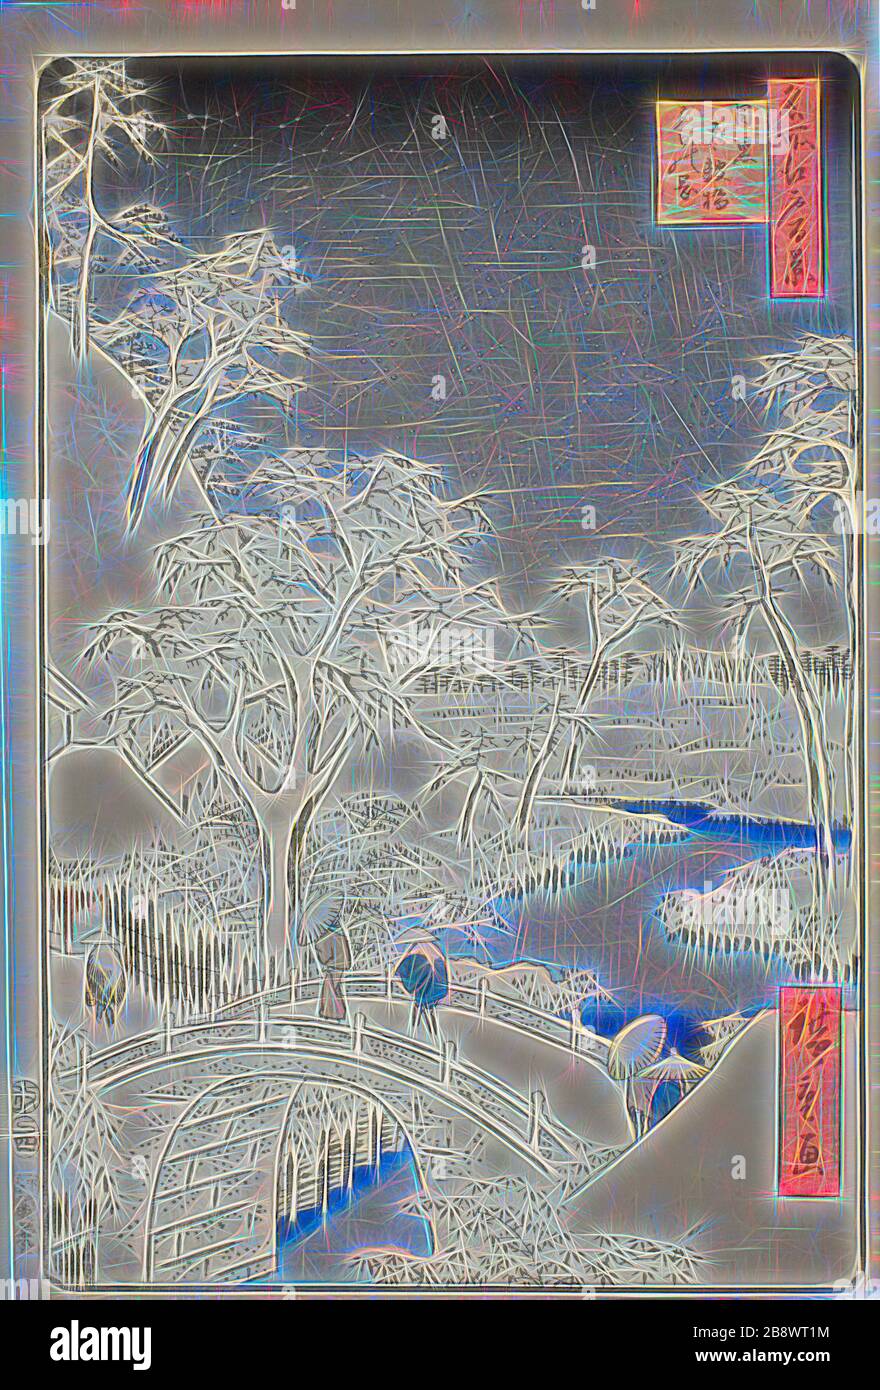 Drum Bridge e Yuhi Hill a Meguro (Meguro Taikobashi Yuhi-no-oka), dalla serie cento famose viste di Edo (Meisho Edo hyakkei), 1857, Utagawa Hiroshige ?? ??, giapponese, 1797–1858, Giappone, stampa a blocchi di legno a colori, oban, 35,8 x 24,2 cm (14 1/16 x 9 1/2 in.), Reimagined by Gibon, design di luce calda e allegra di luminosità e raggi di luce radianza. Arte classica reinventata con un tocco moderno. La fotografia ispirata al futurismo, che abbraccia l'energia dinamica della tecnologia moderna, del movimento, della velocità e rivoluziona la cultura. Foto Stock